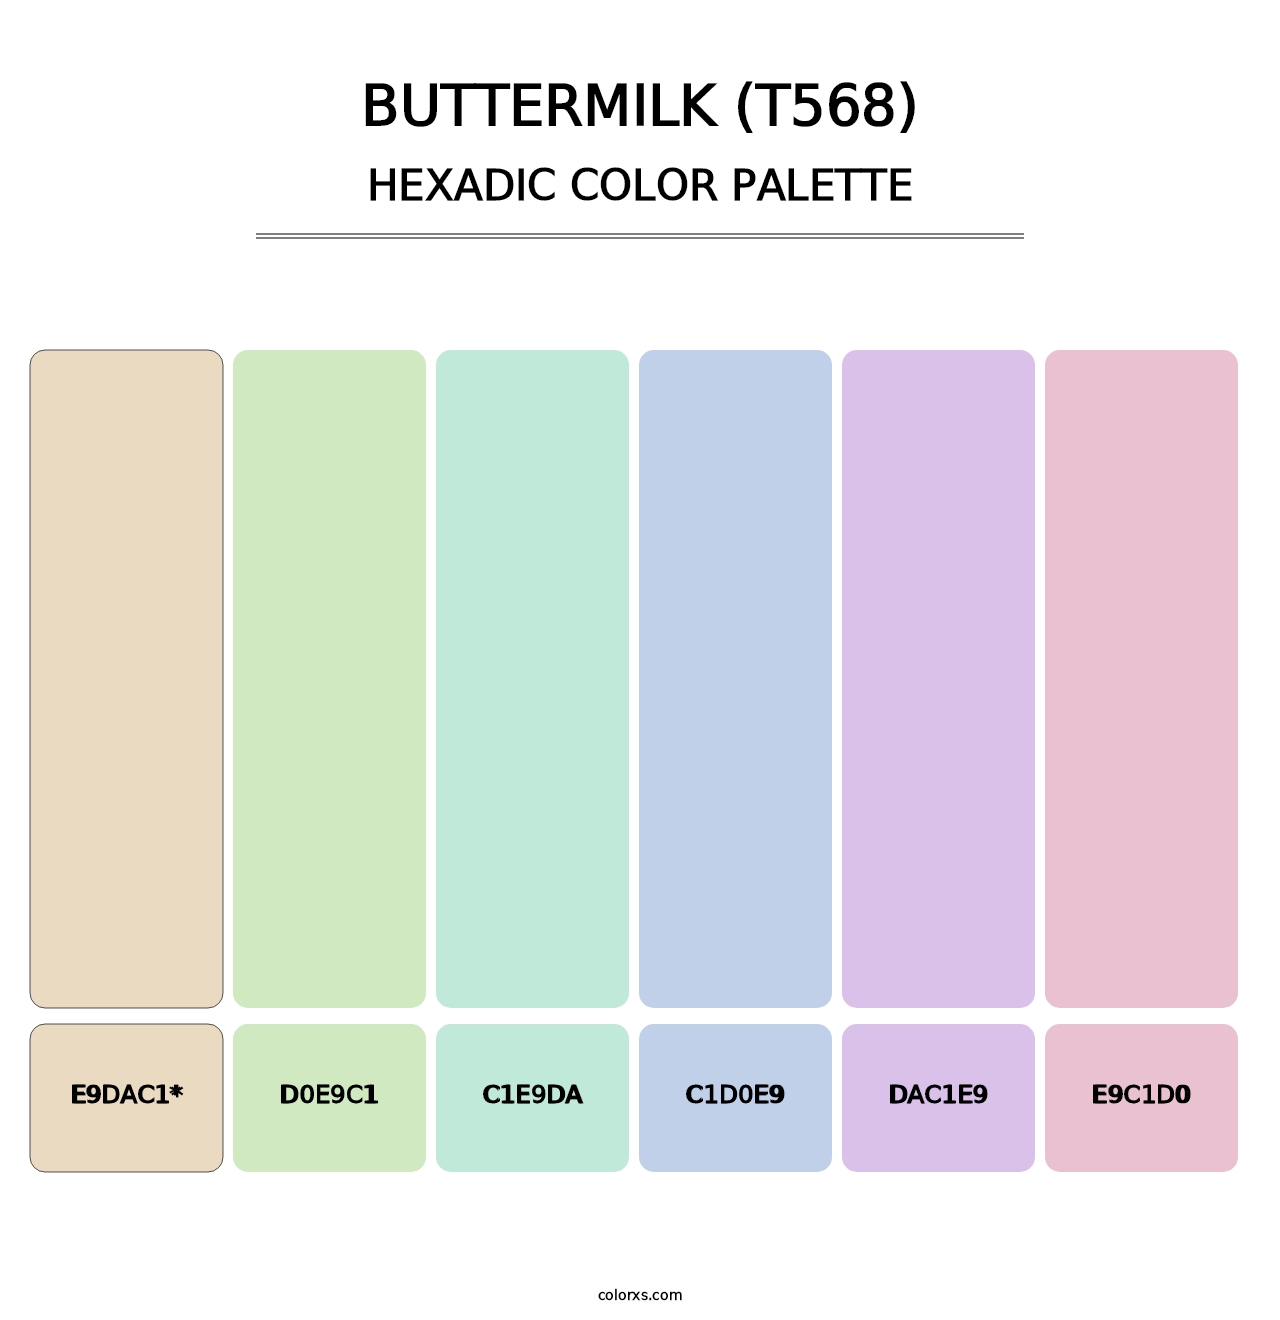 Buttermilk (T568) - Hexadic Color Palette